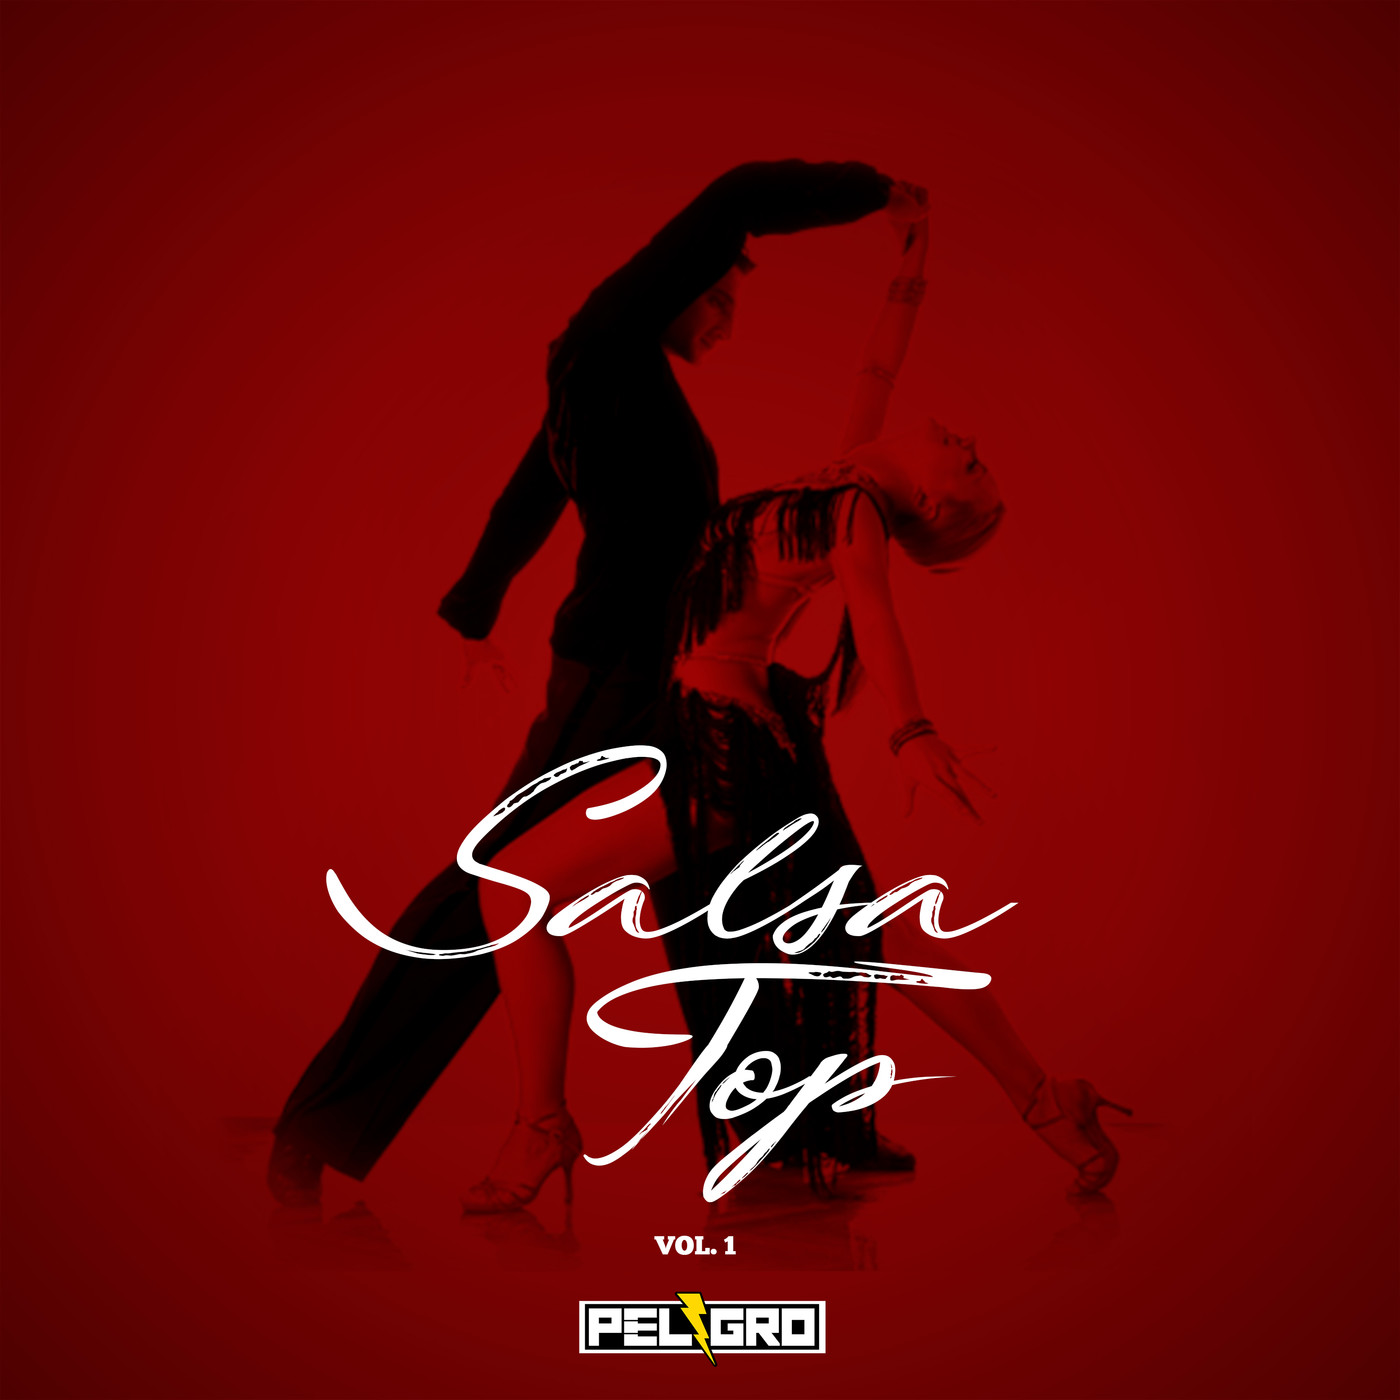 Mix Salsa Top Vol. 1